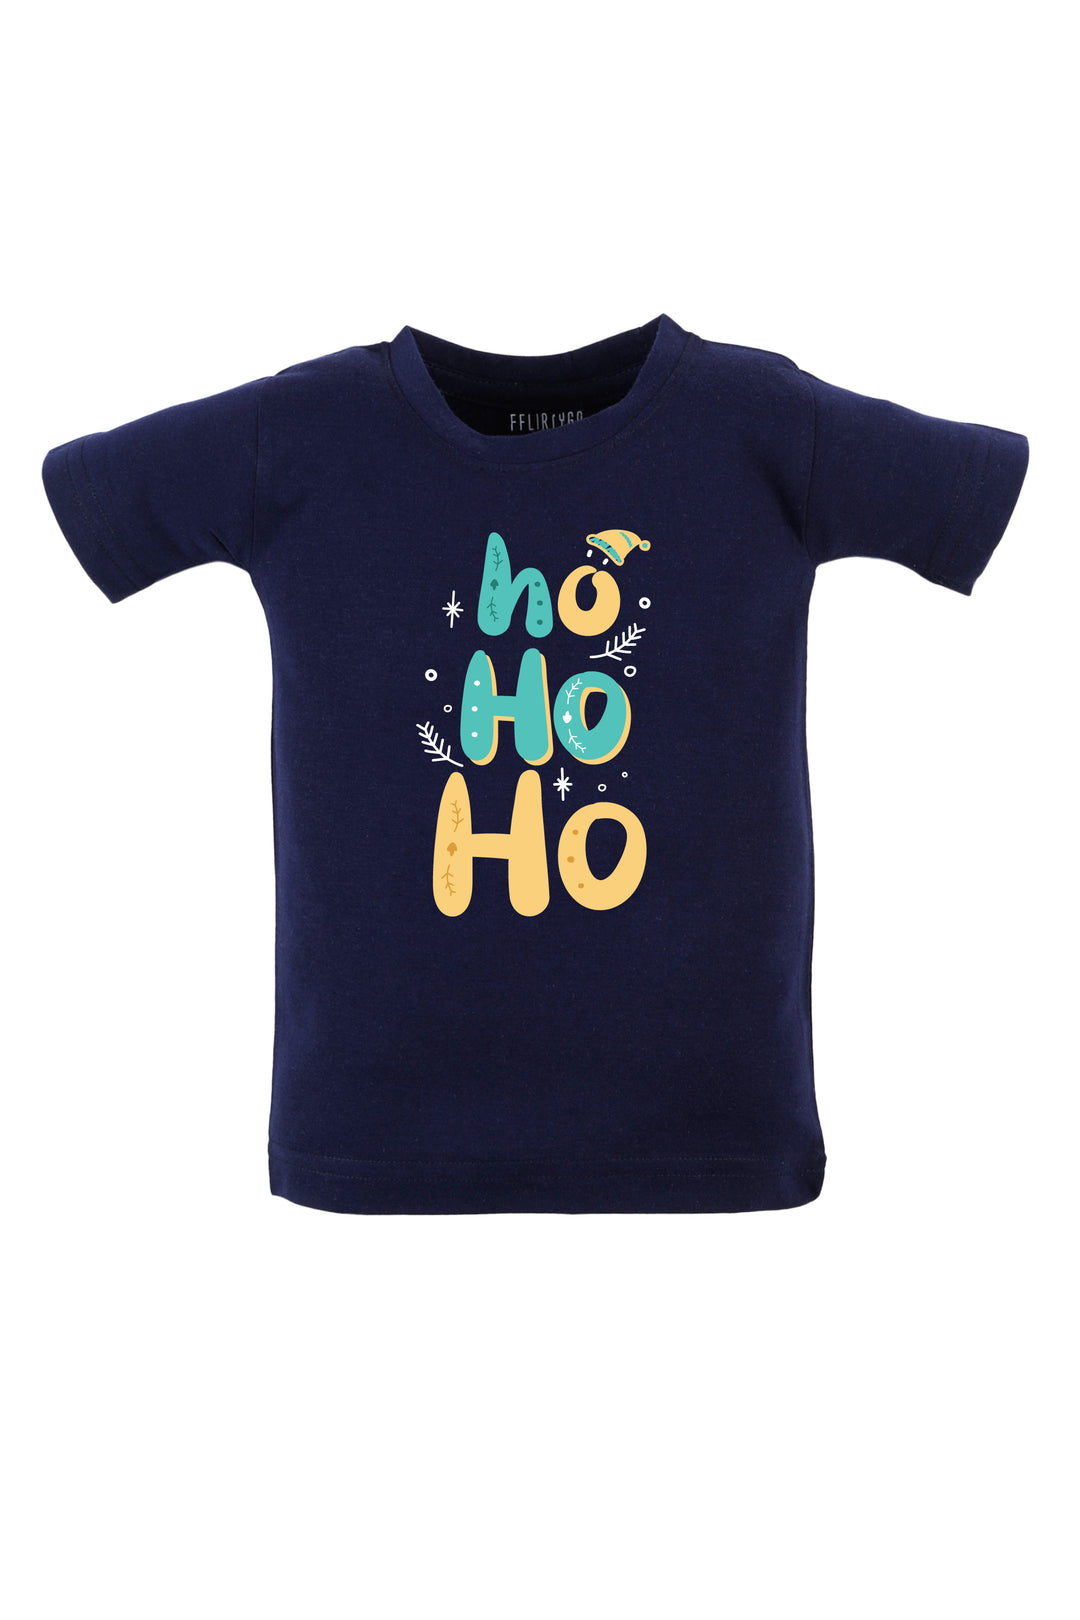 Ho Ho Ho Kids T Shirt